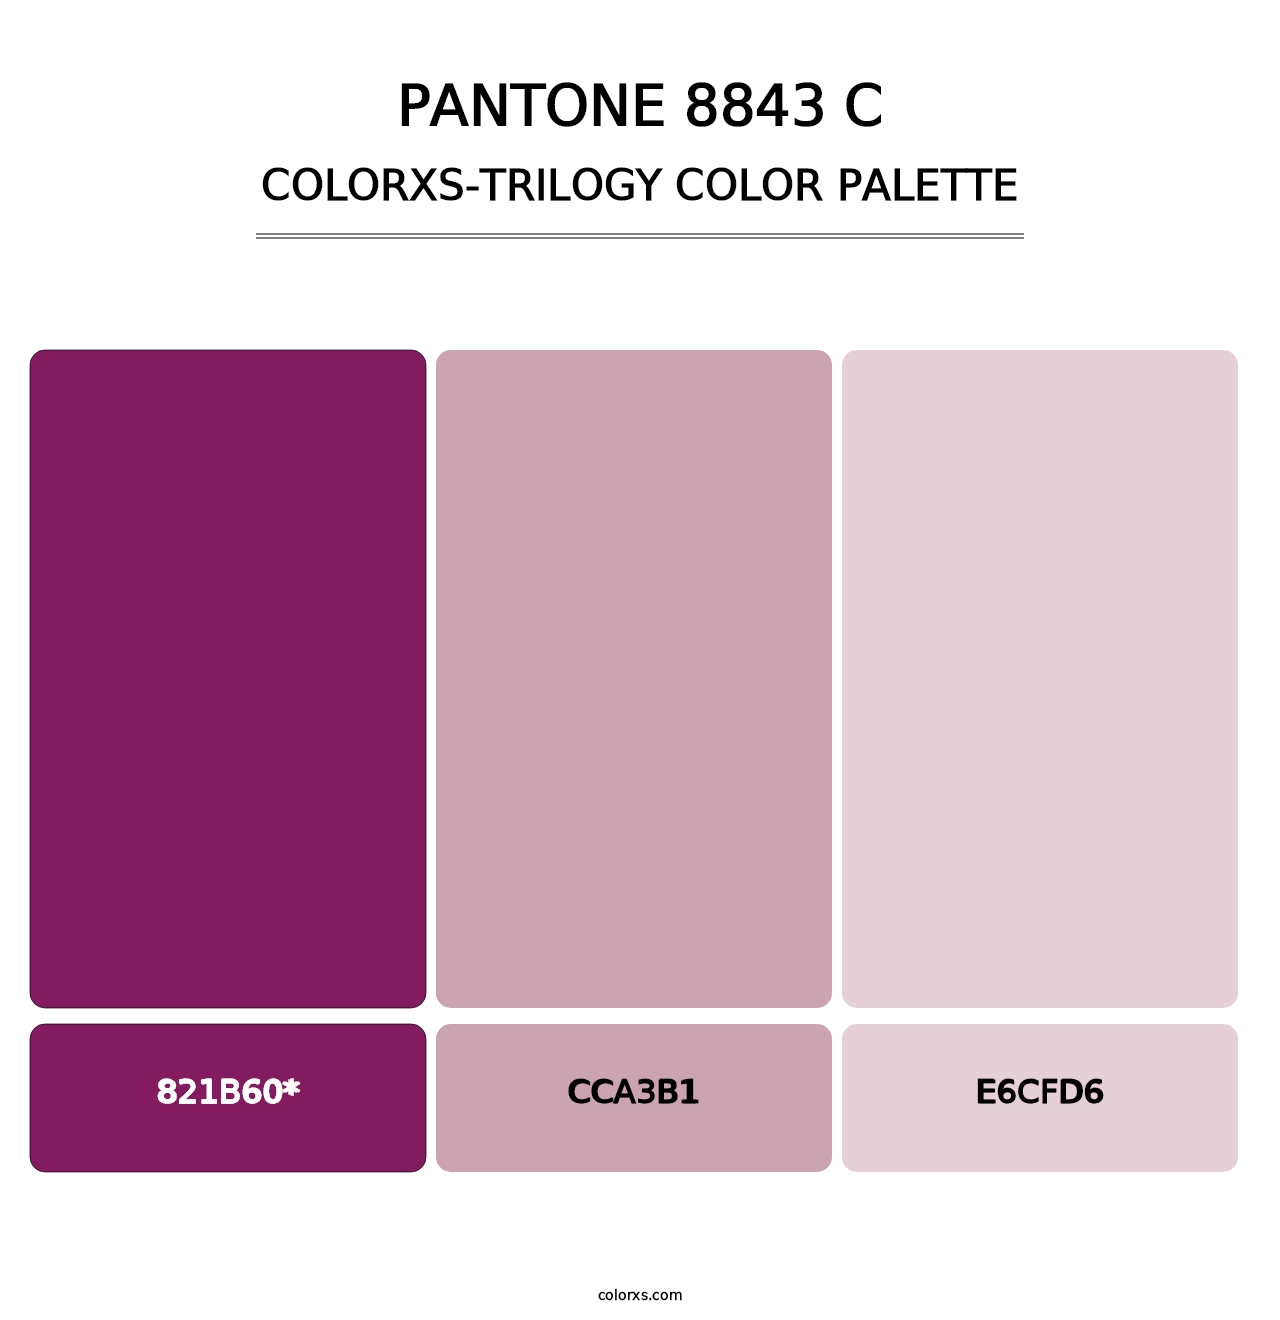 PANTONE 8843 C - Colorxs Trilogy Palette